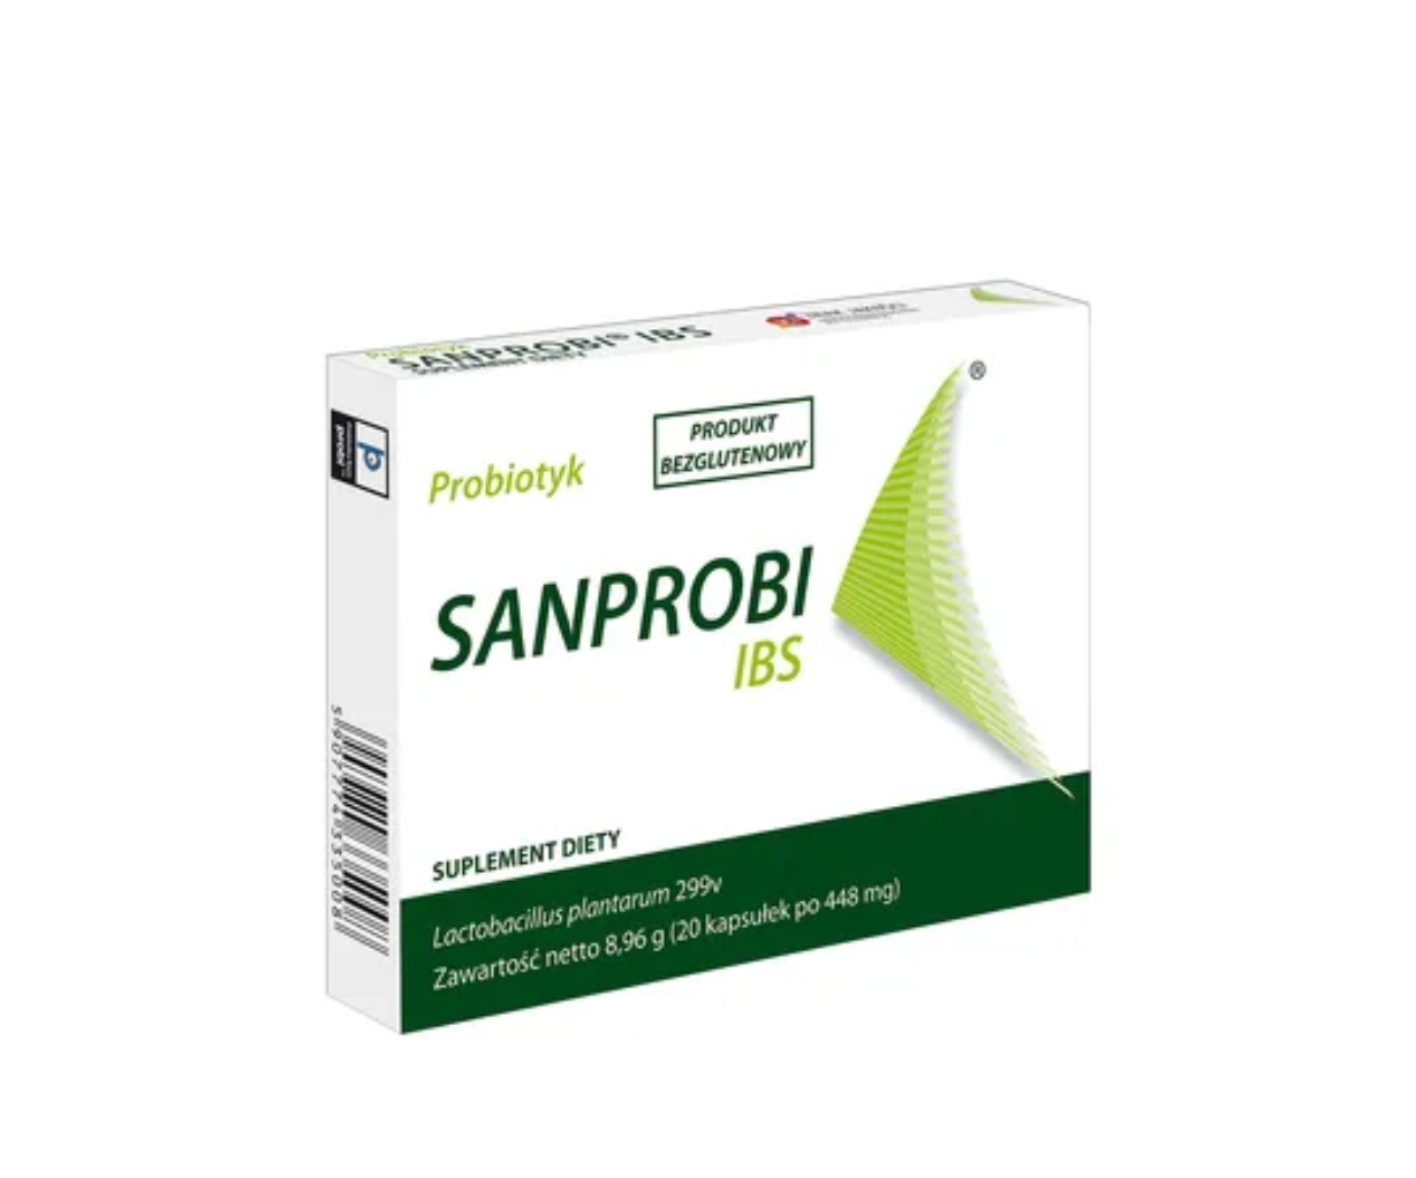 Sanprobi IBS, ein probiotisches Nahrungsergänzungsmittel